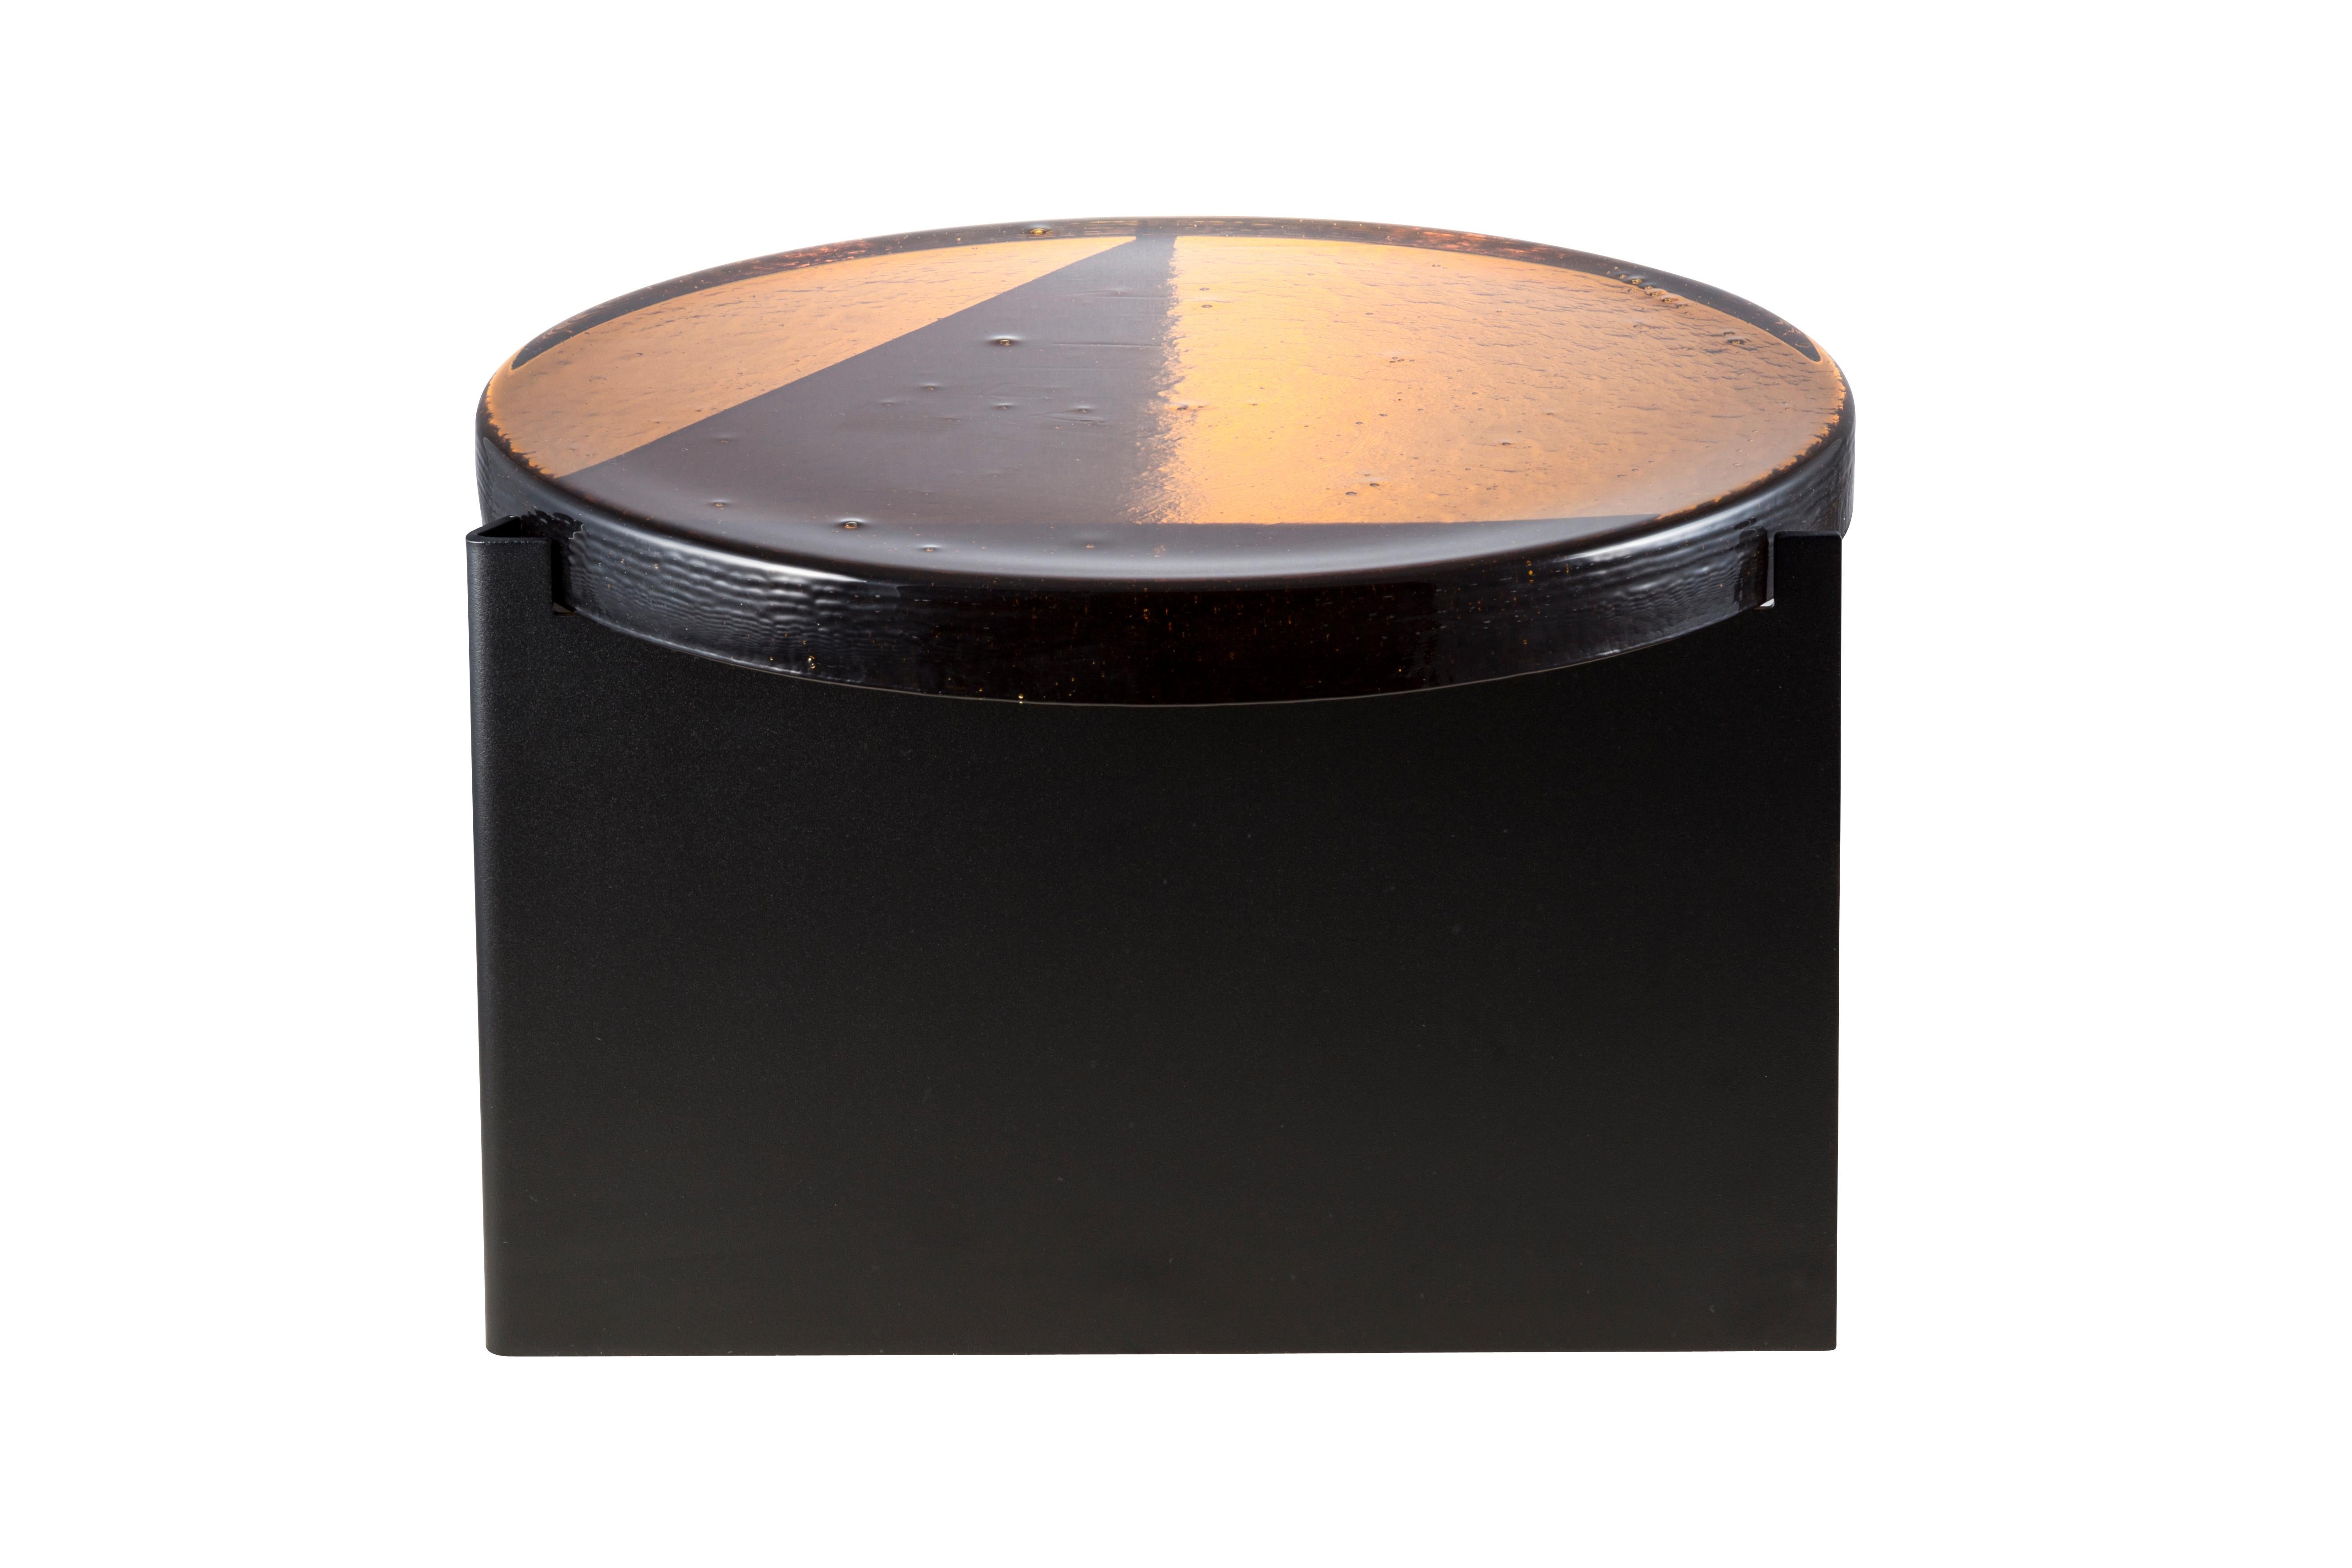 Table basse Alwa One Big Amber Black de Pulpo
Dimensions : D56 x H35 cm
MATERIAL : verre coulé ; acier revêtu de poudre. 

Disponible également en différentes finitions. Veuillez nous contacter.

Normalement, le verre est considéré comme un matériau